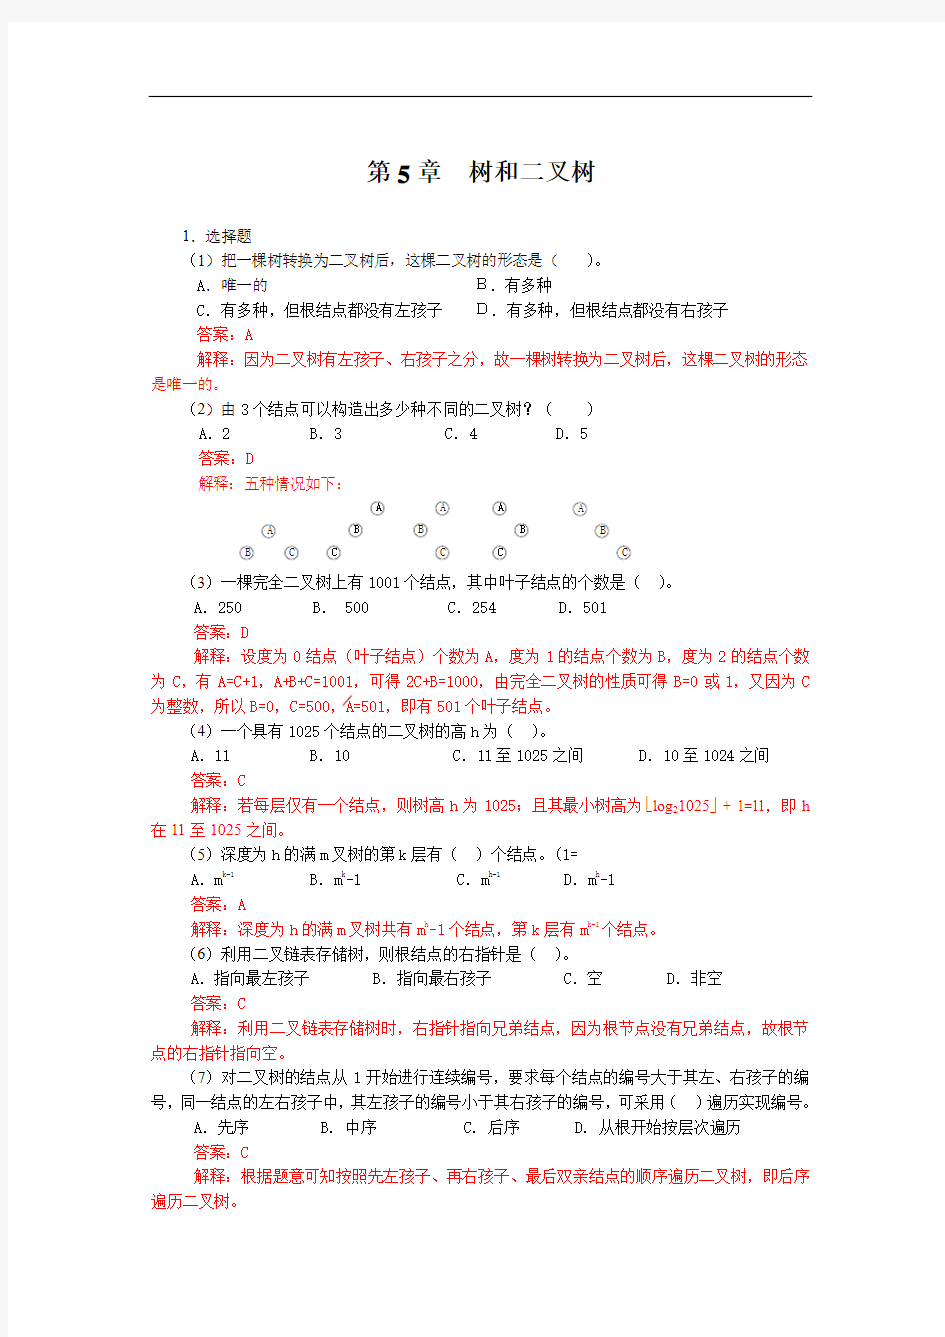 数据结构 C语言版 第二版(严蔚敏) 第5章  树和二叉树 答案